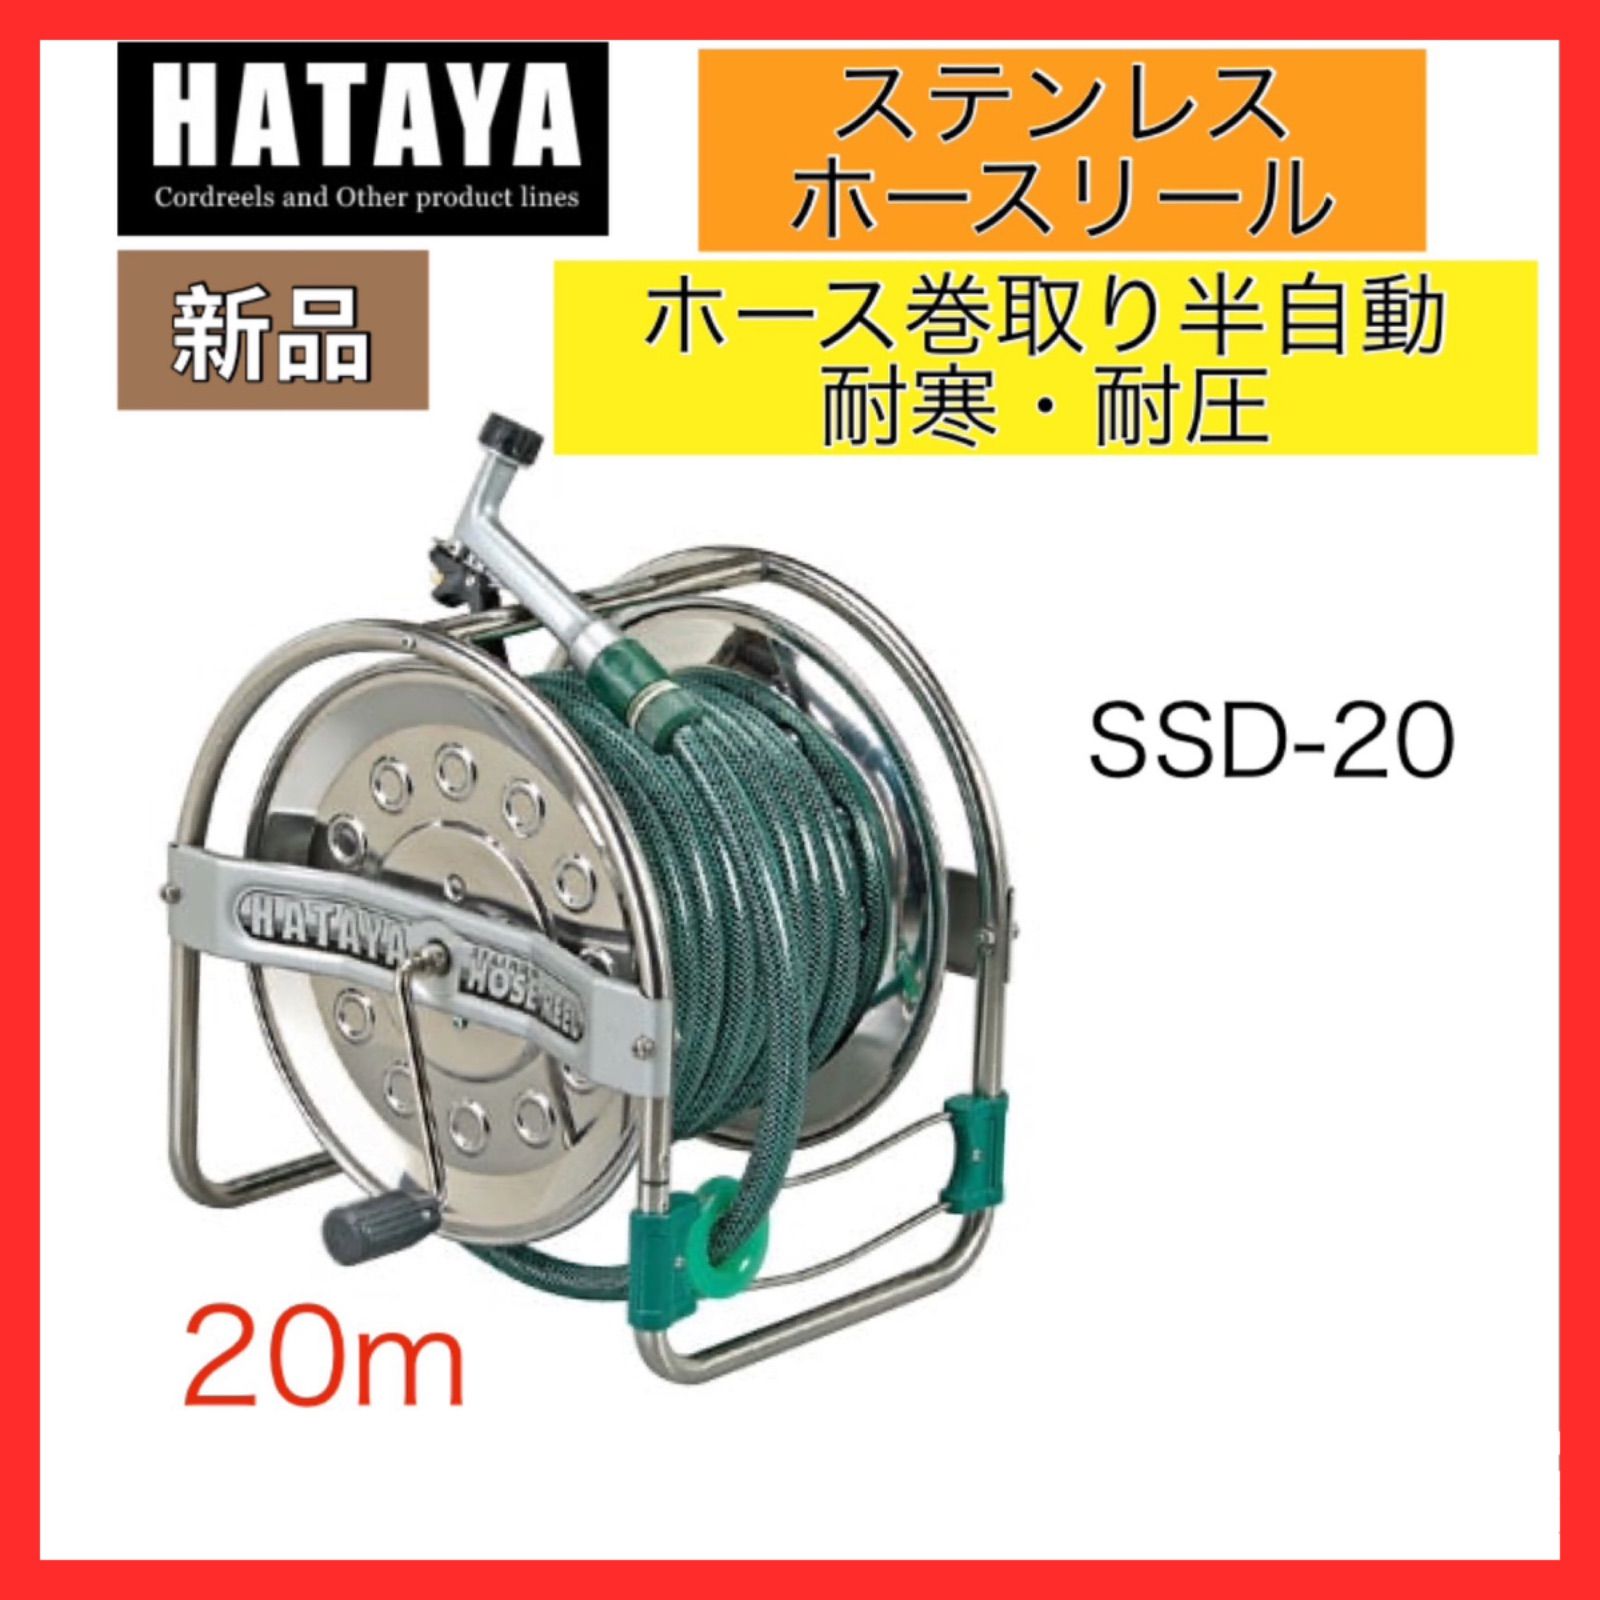 ハヤタ HATAYA ステンレス ホースリール SSD-20 20m 普及タイプ スピード発送????HYMA shop メルカリ